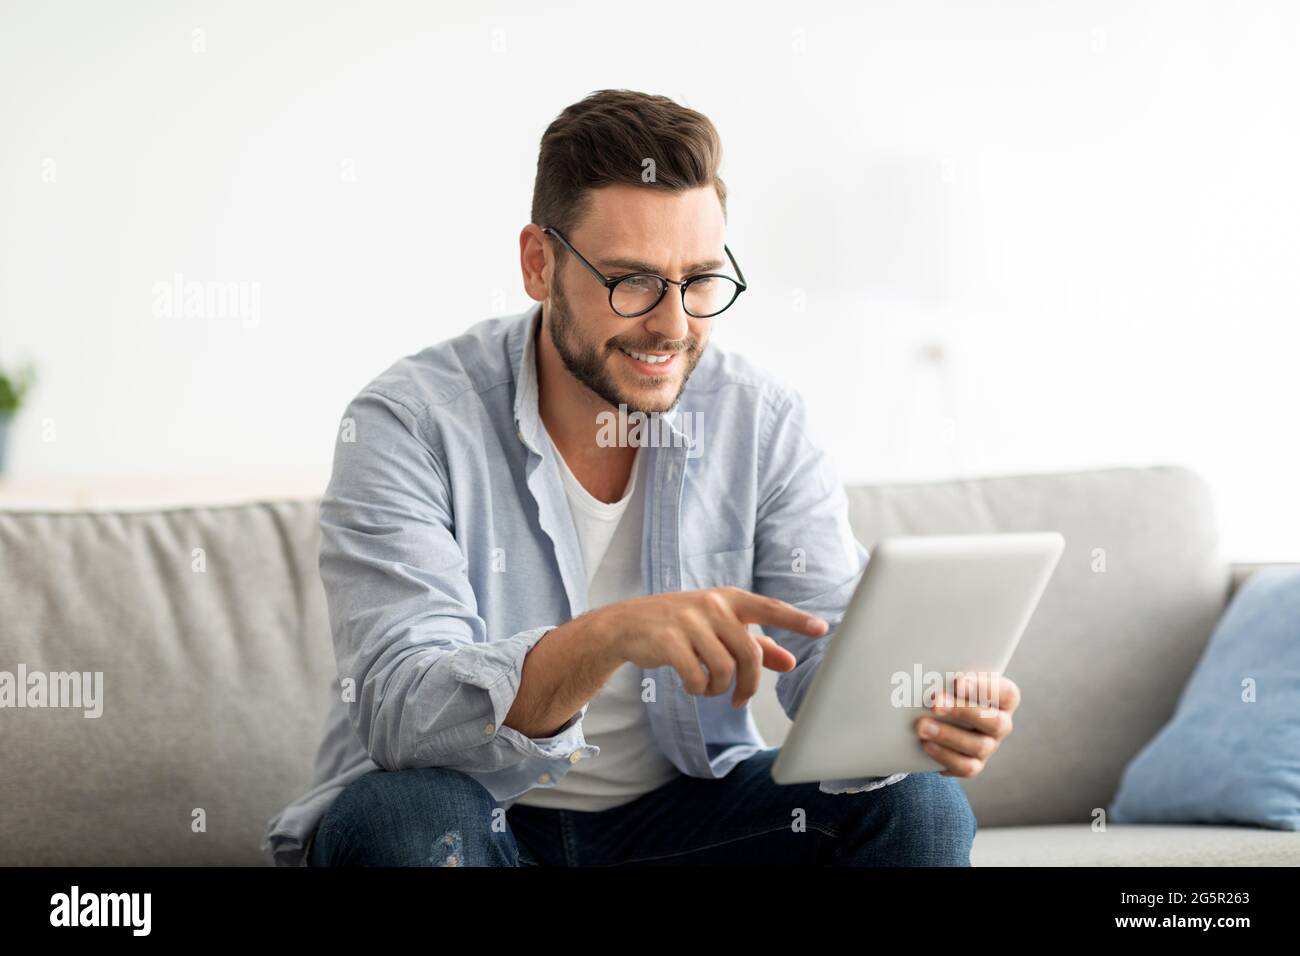 Concetto di tempo libero. Uomo felice che usa un tablet digitale, seduto sul divano in soggiorno, spazio per la copia Foto Stock